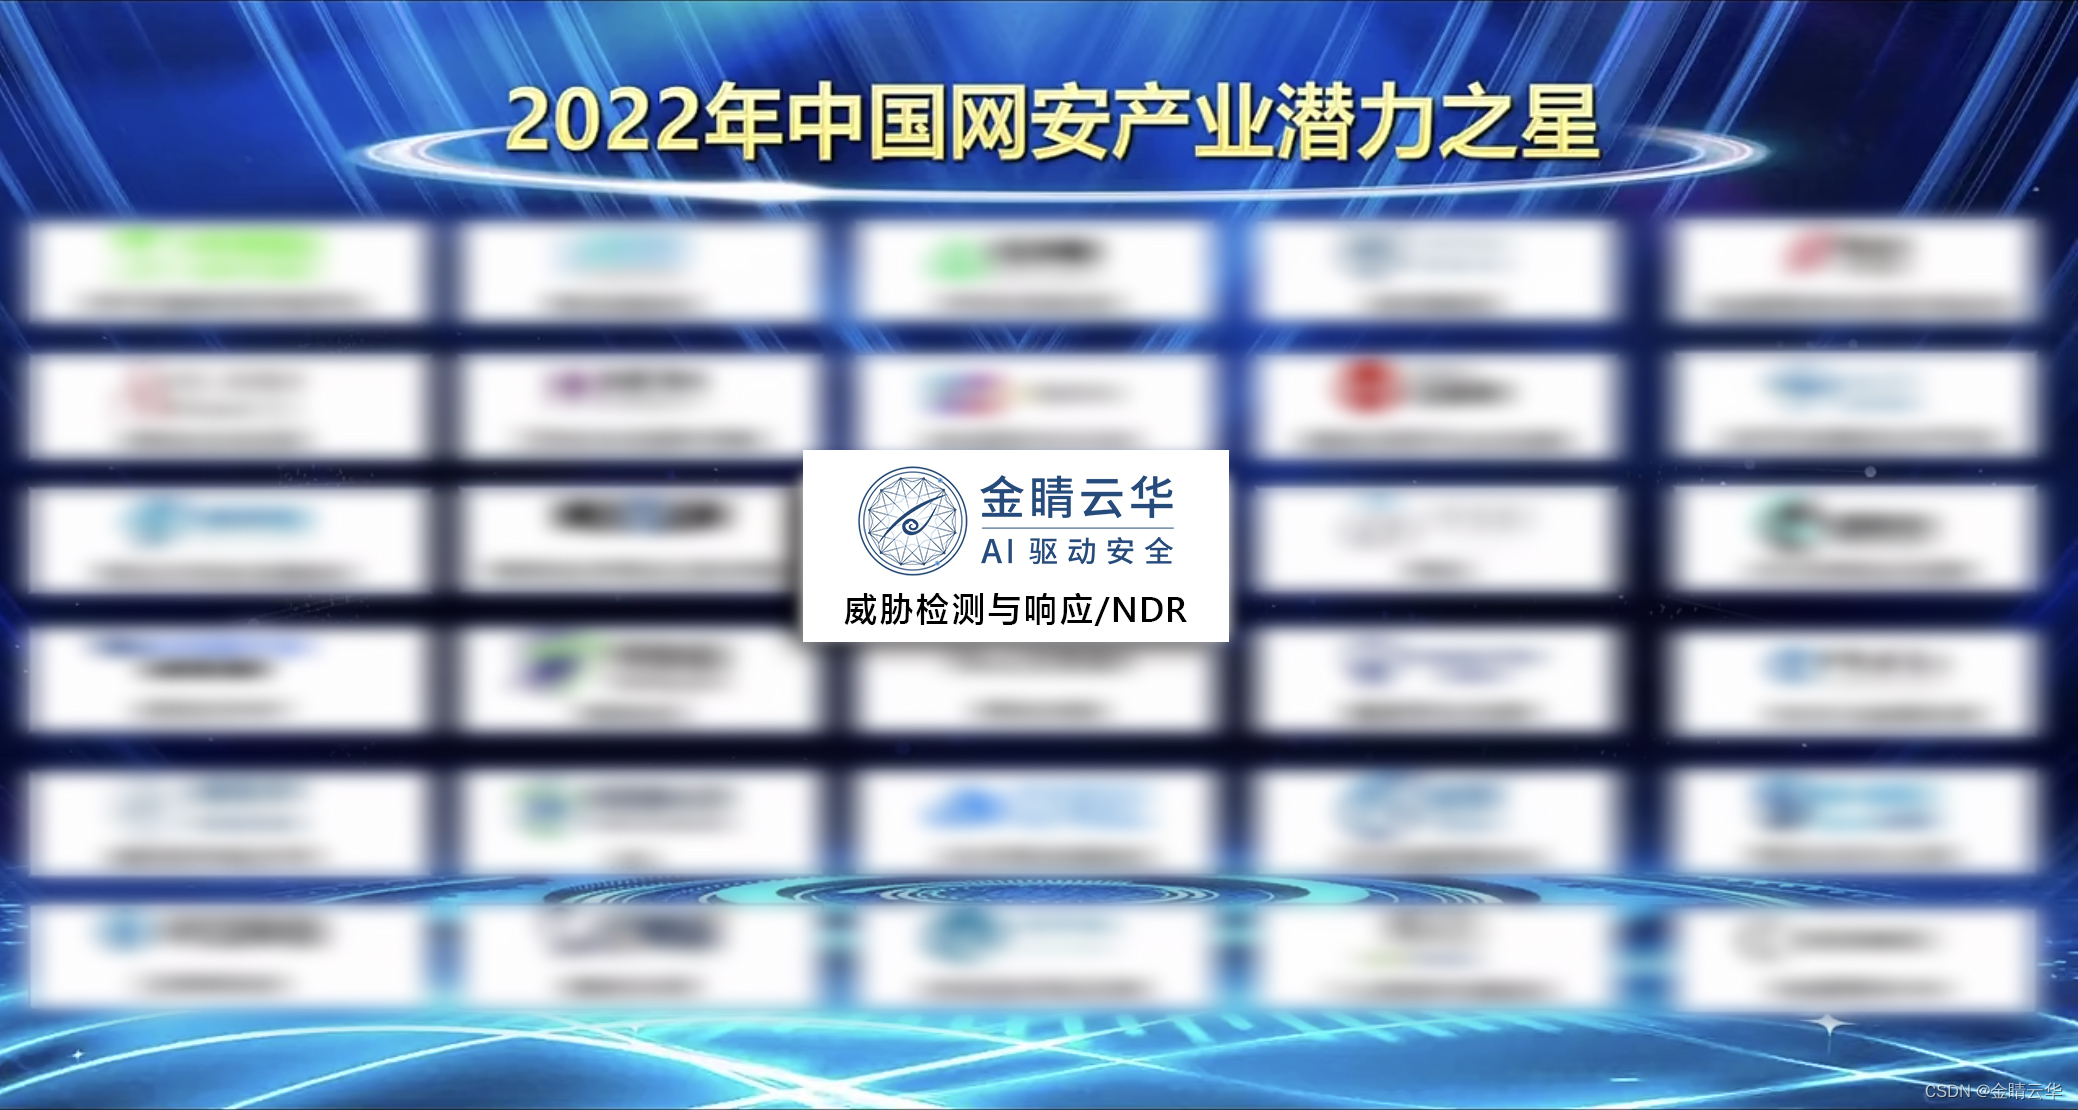 金睛云华蝉联CCIA评选的“2022年中国网安产业潜力之星”